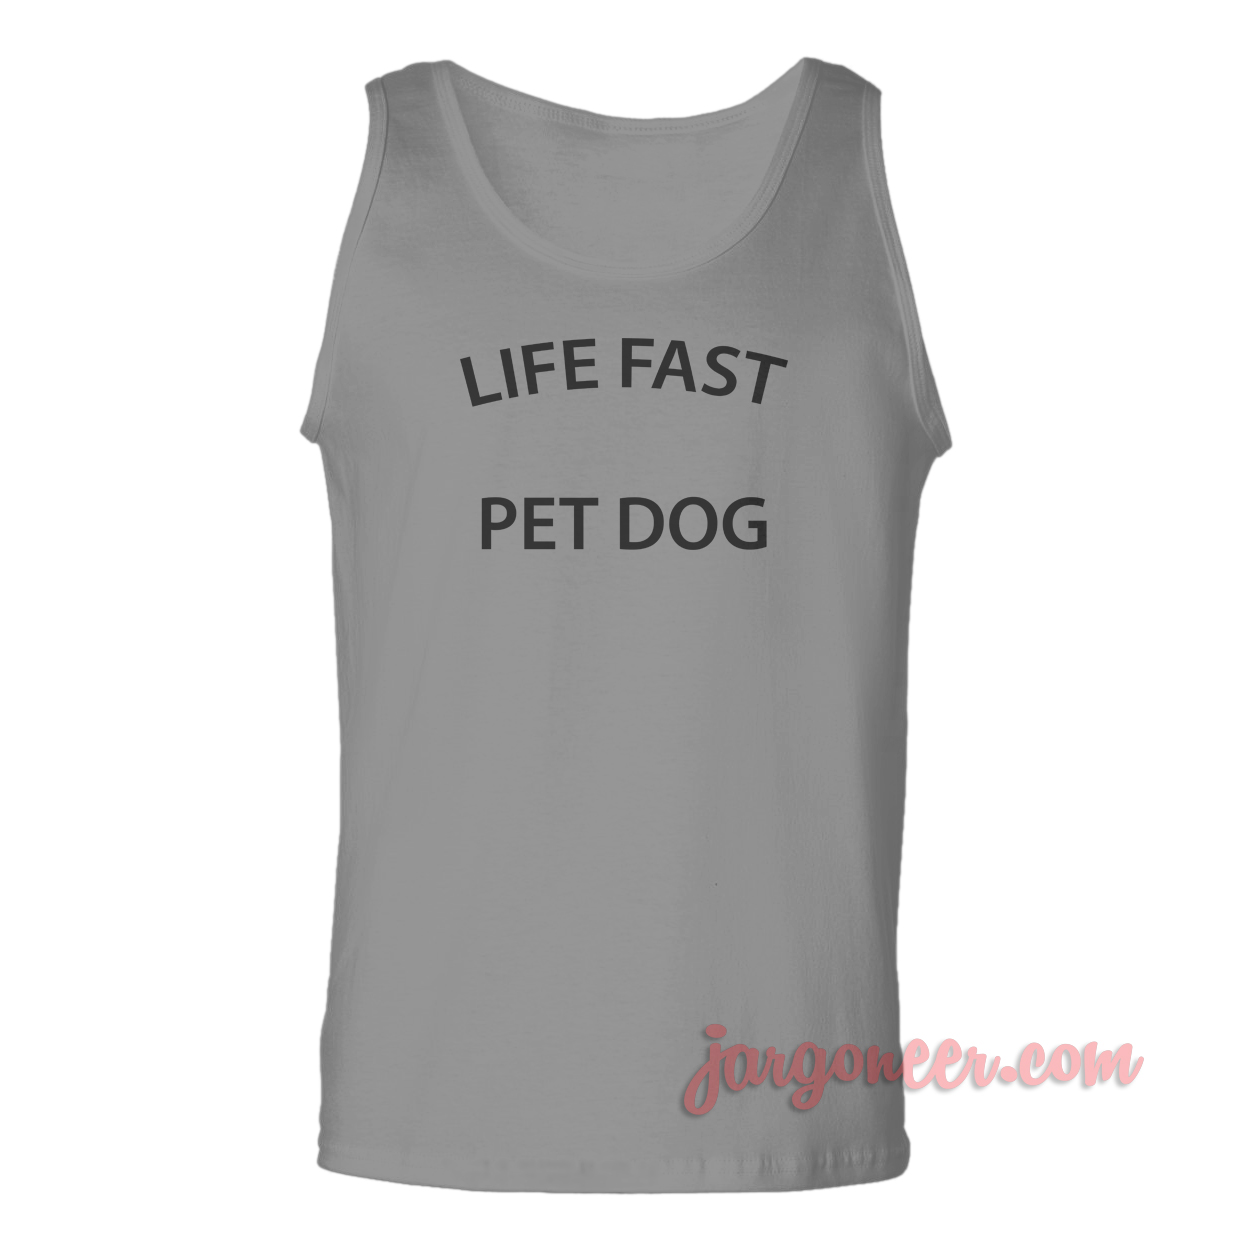 Life Fast Pet Dog - Shop Unique Graphic Cool Shirt Designs